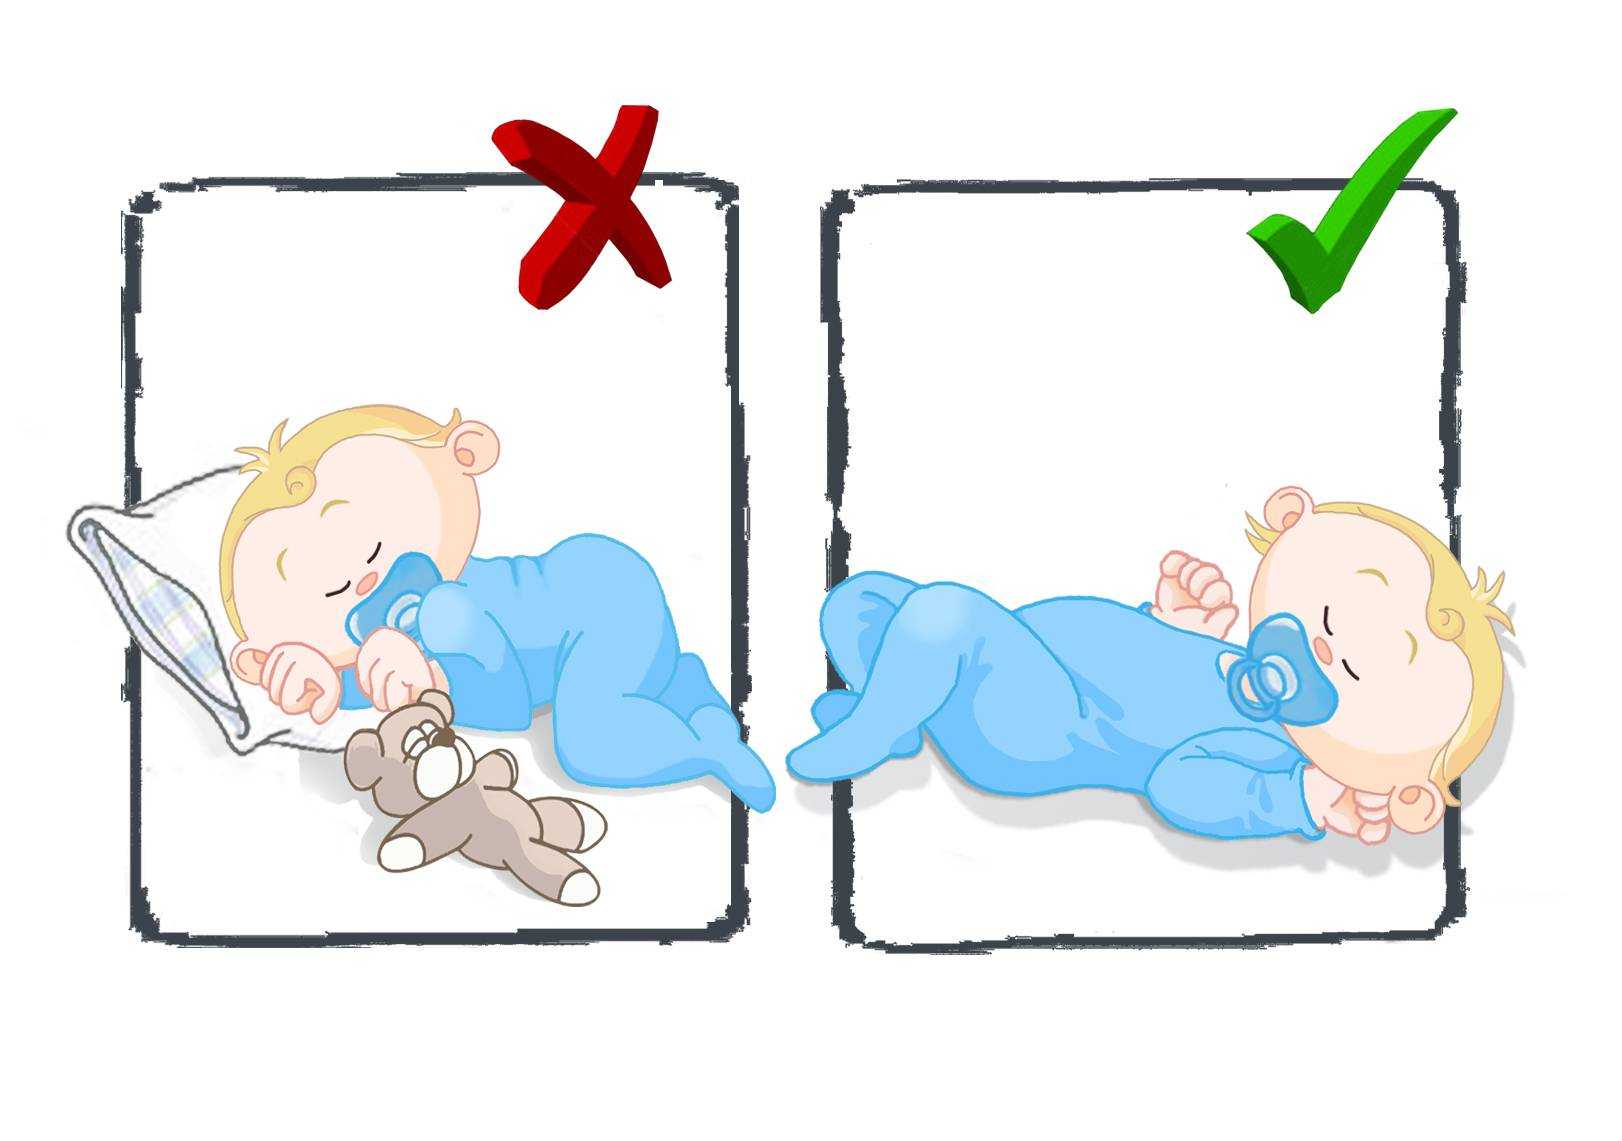 Как приучить ребенка спать в своей кроватке отдельно от родителей. доктор комаровский